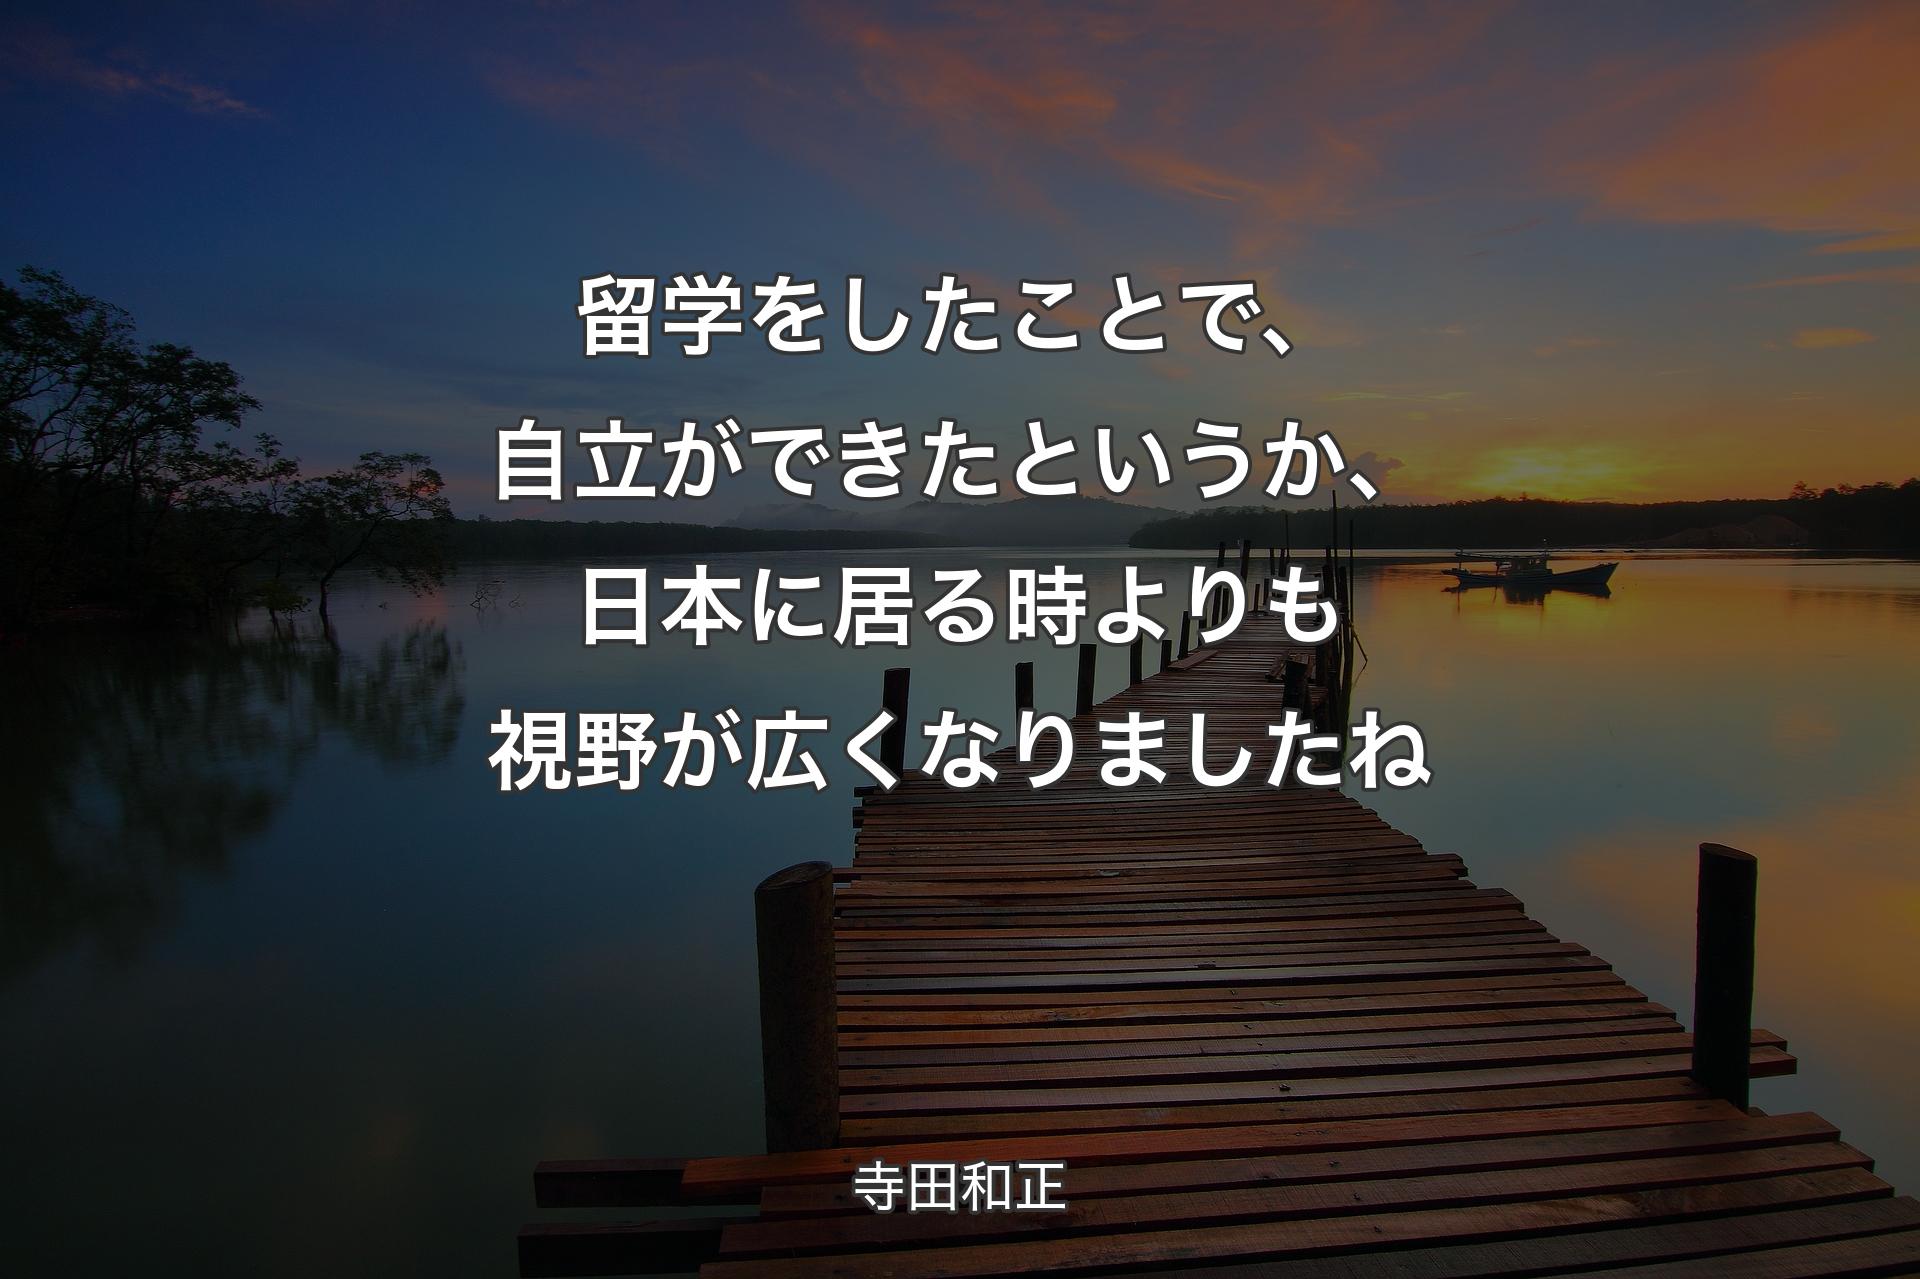 【背景3】留学をしたことで、自立ができたというか、日本に居る時よりも視野が広くなりましたね - 寺田和正